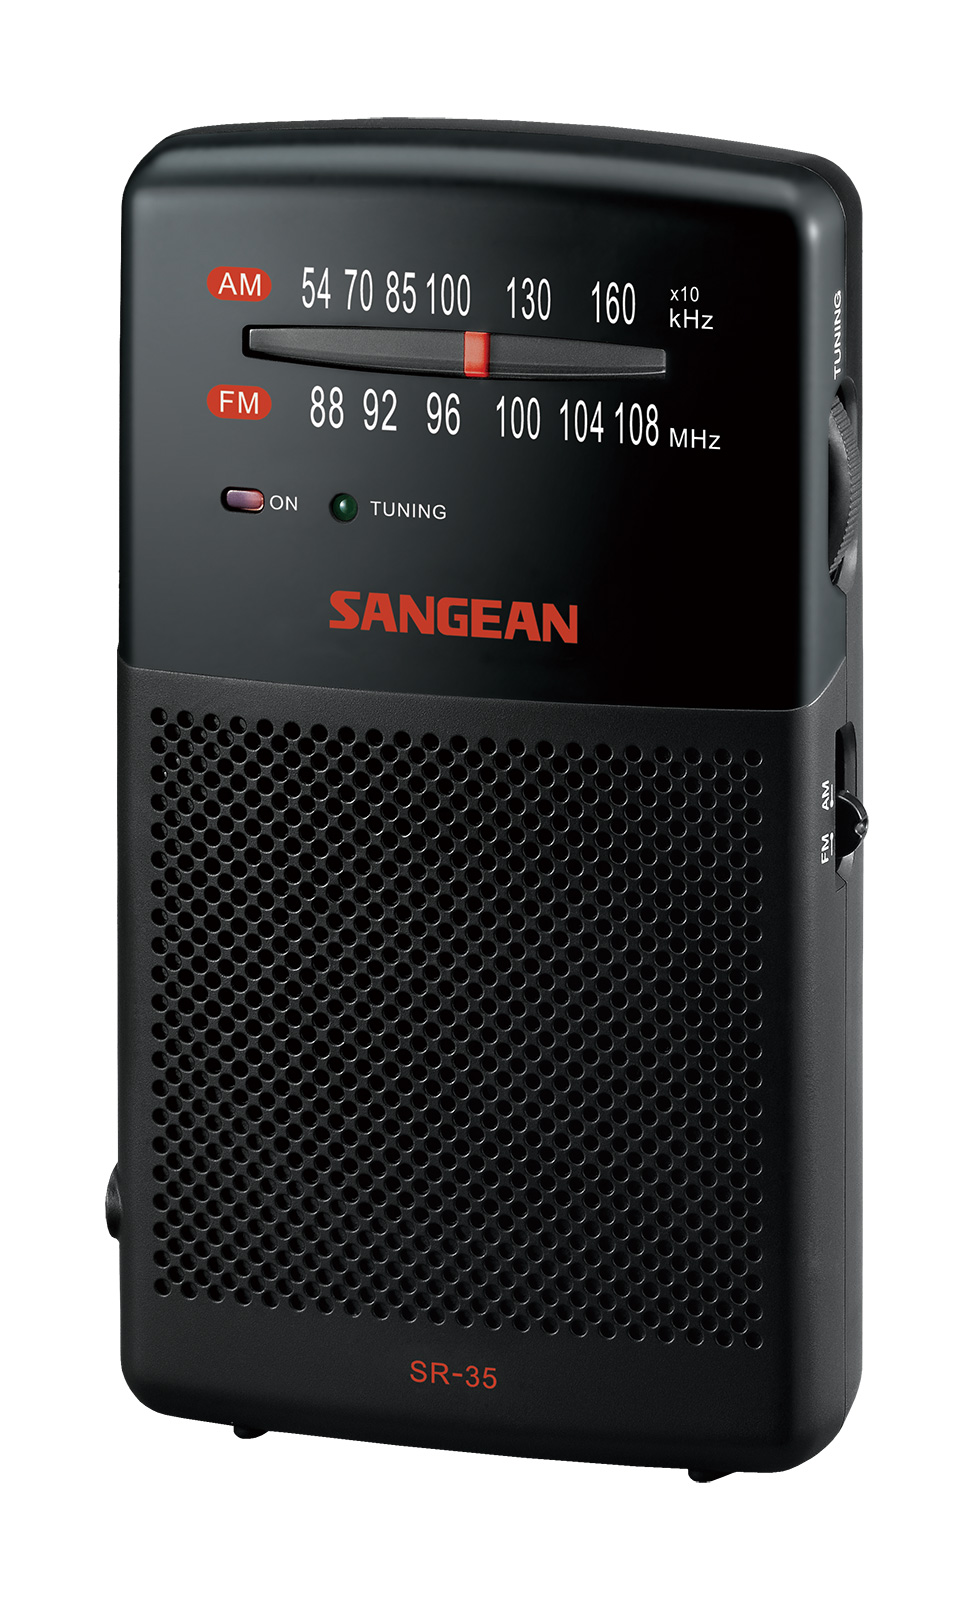 Radio de poche AM / FM avec haut-parleur intégré SR-35 